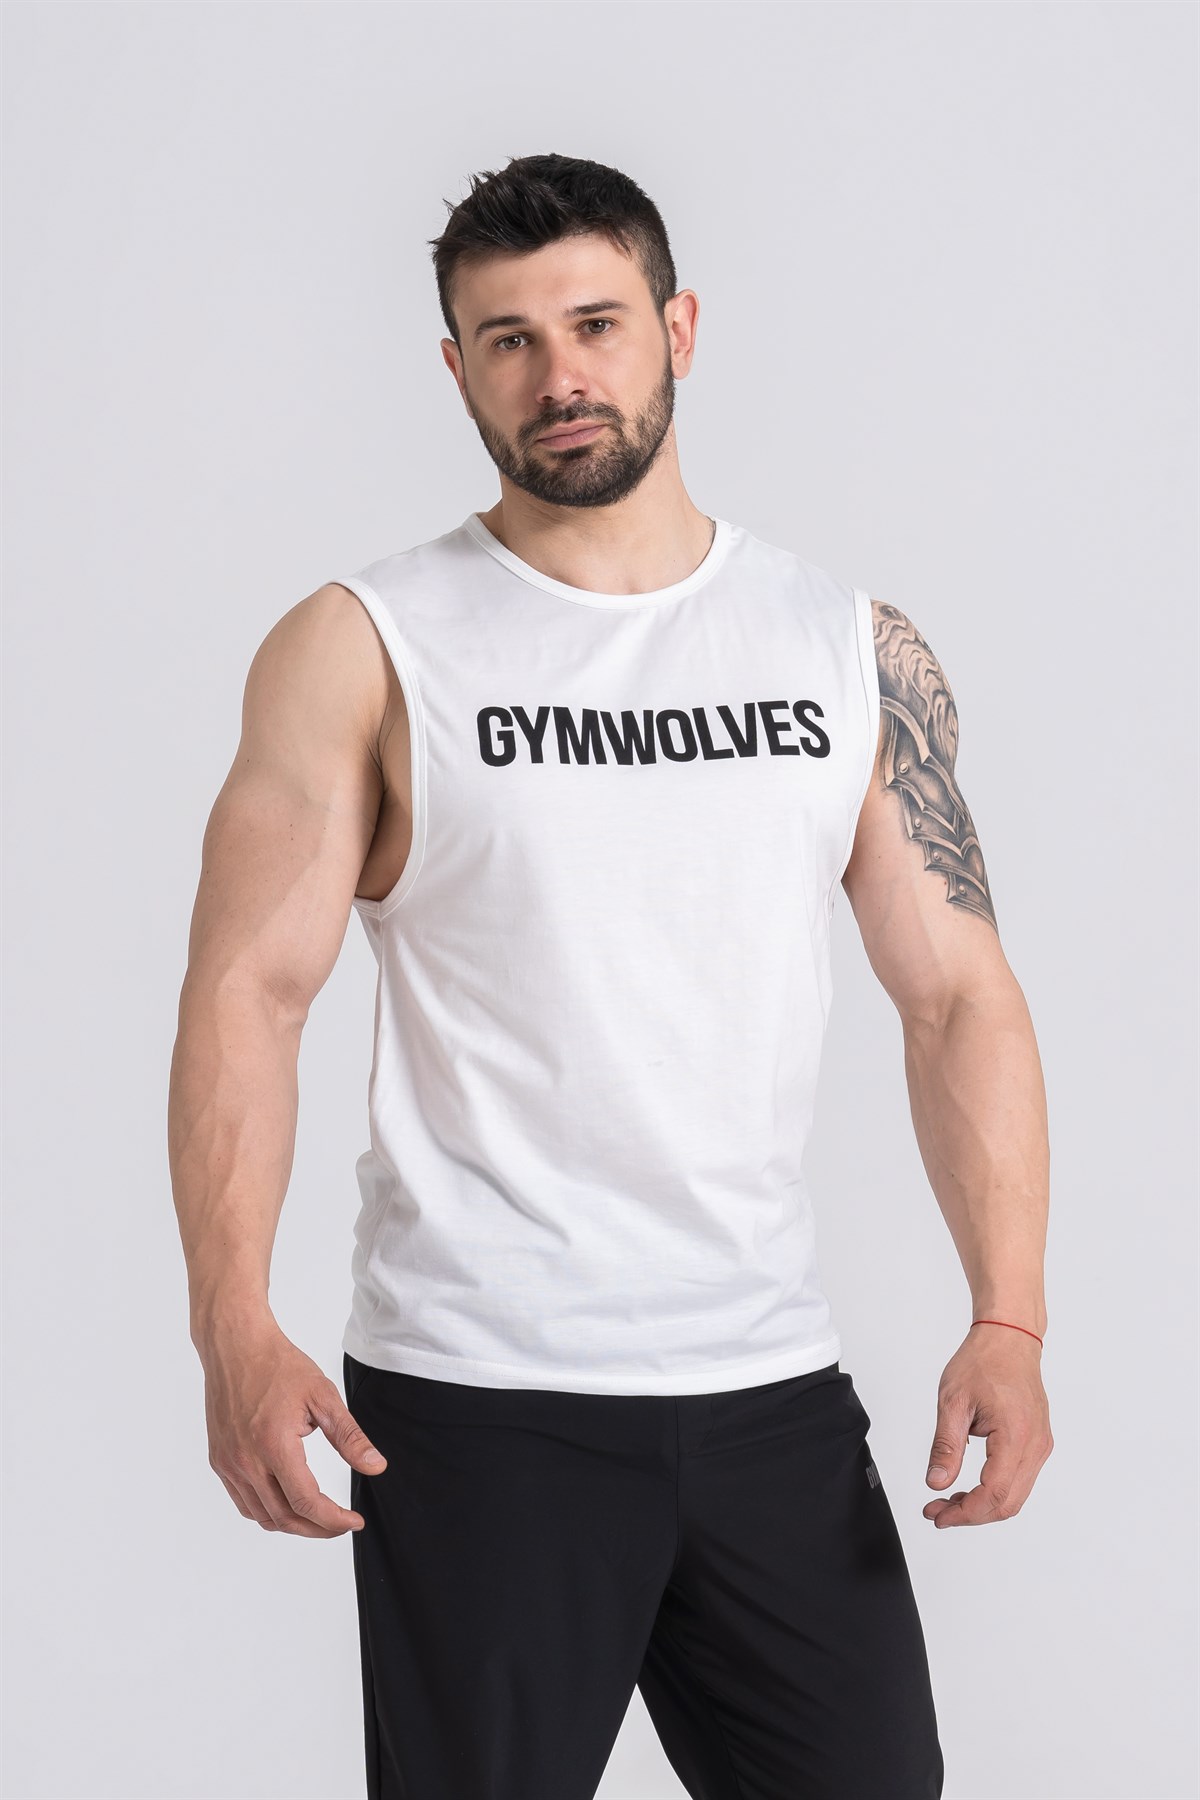 Gymwolves White Men Sleeveless T-Shirt 2195